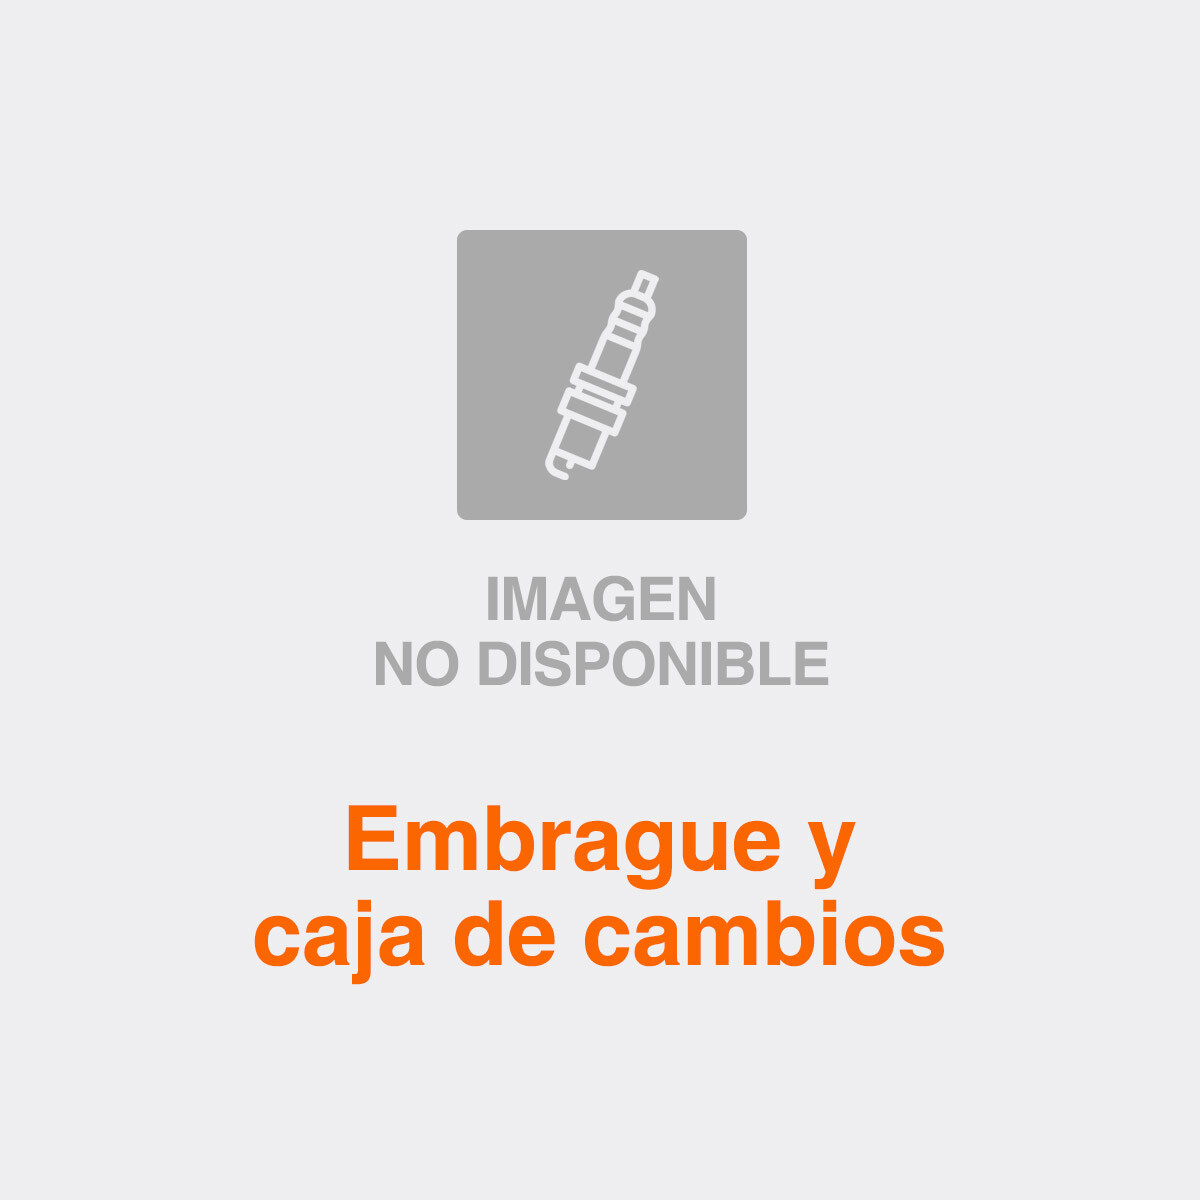 CAJA DE CAMBIOS PARTES CITROEN - PEUGEOT DESPLAZABLE 5TA. C510/C513 - 